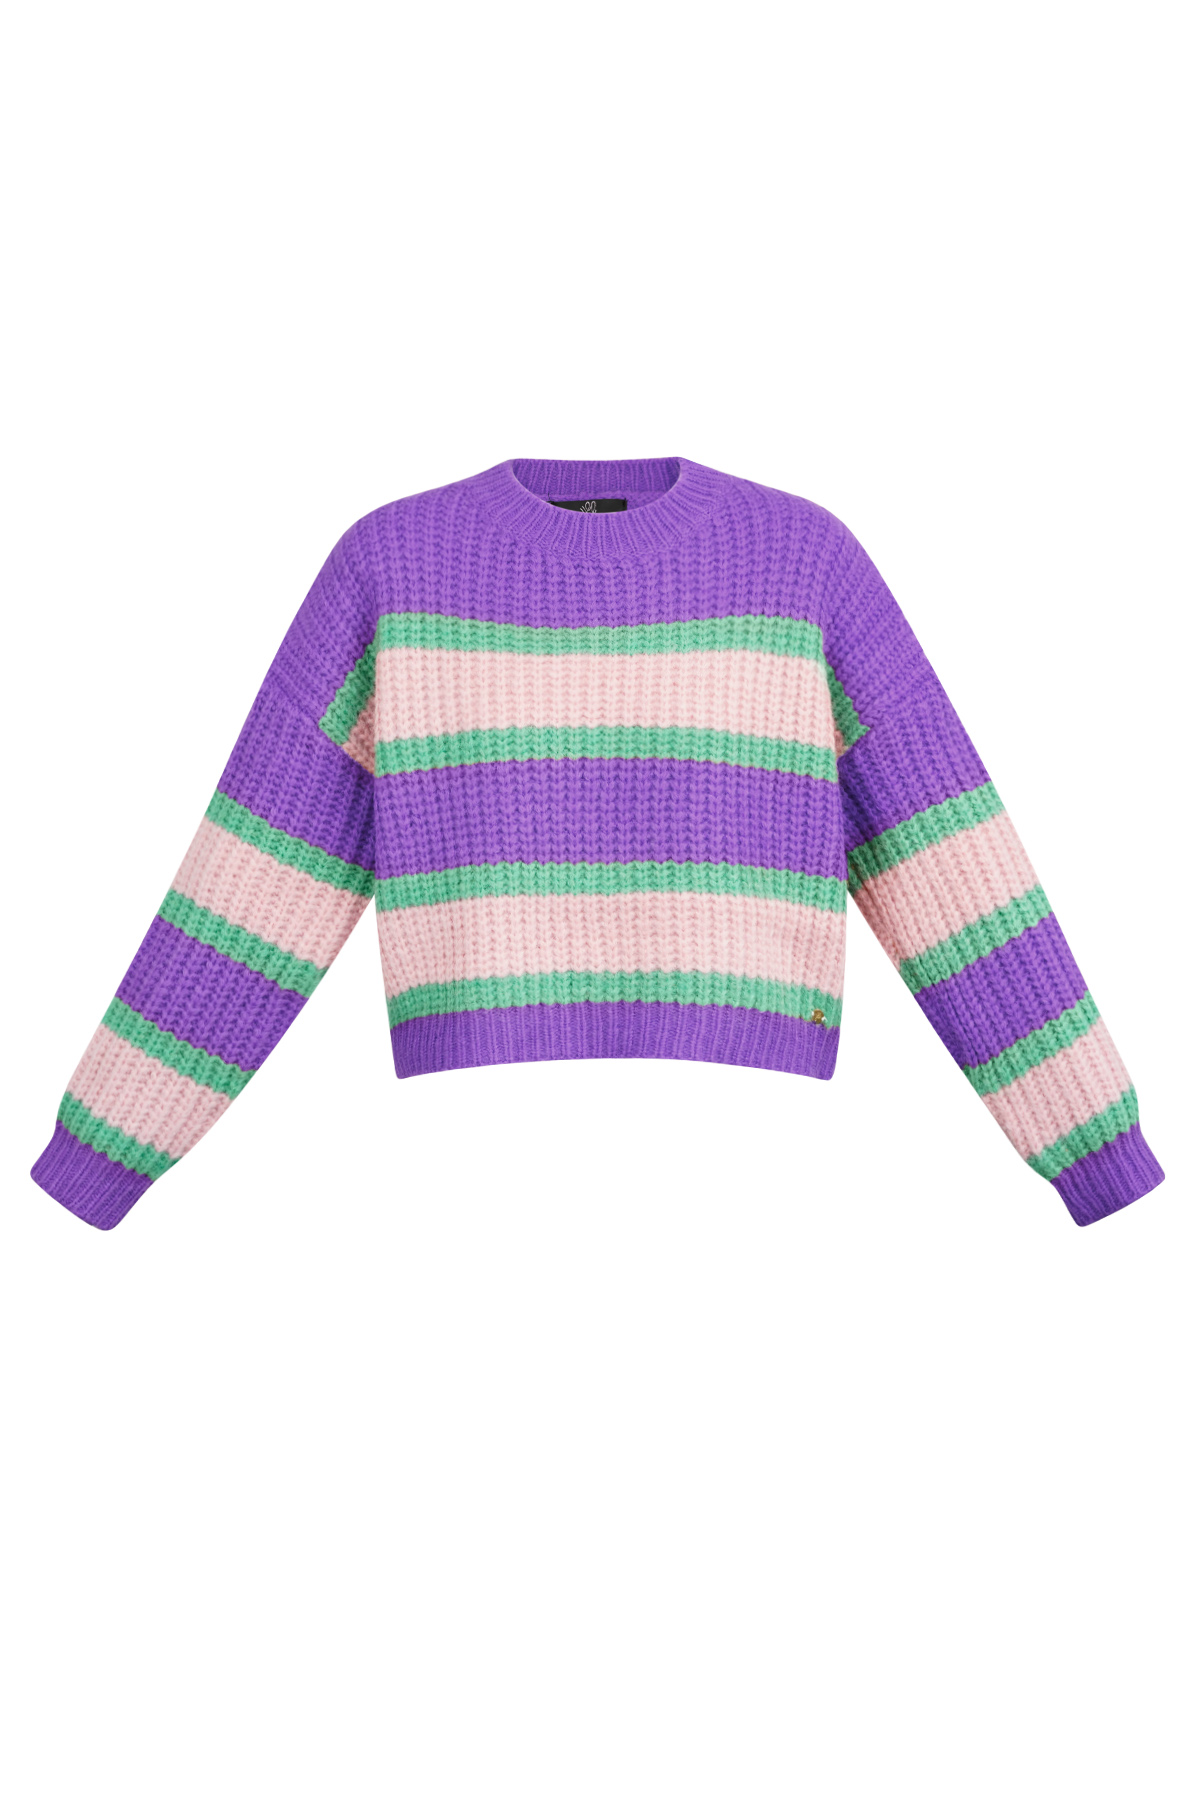 Gestrickter dreifarbiger Pullover mit Streifen – rosa lila